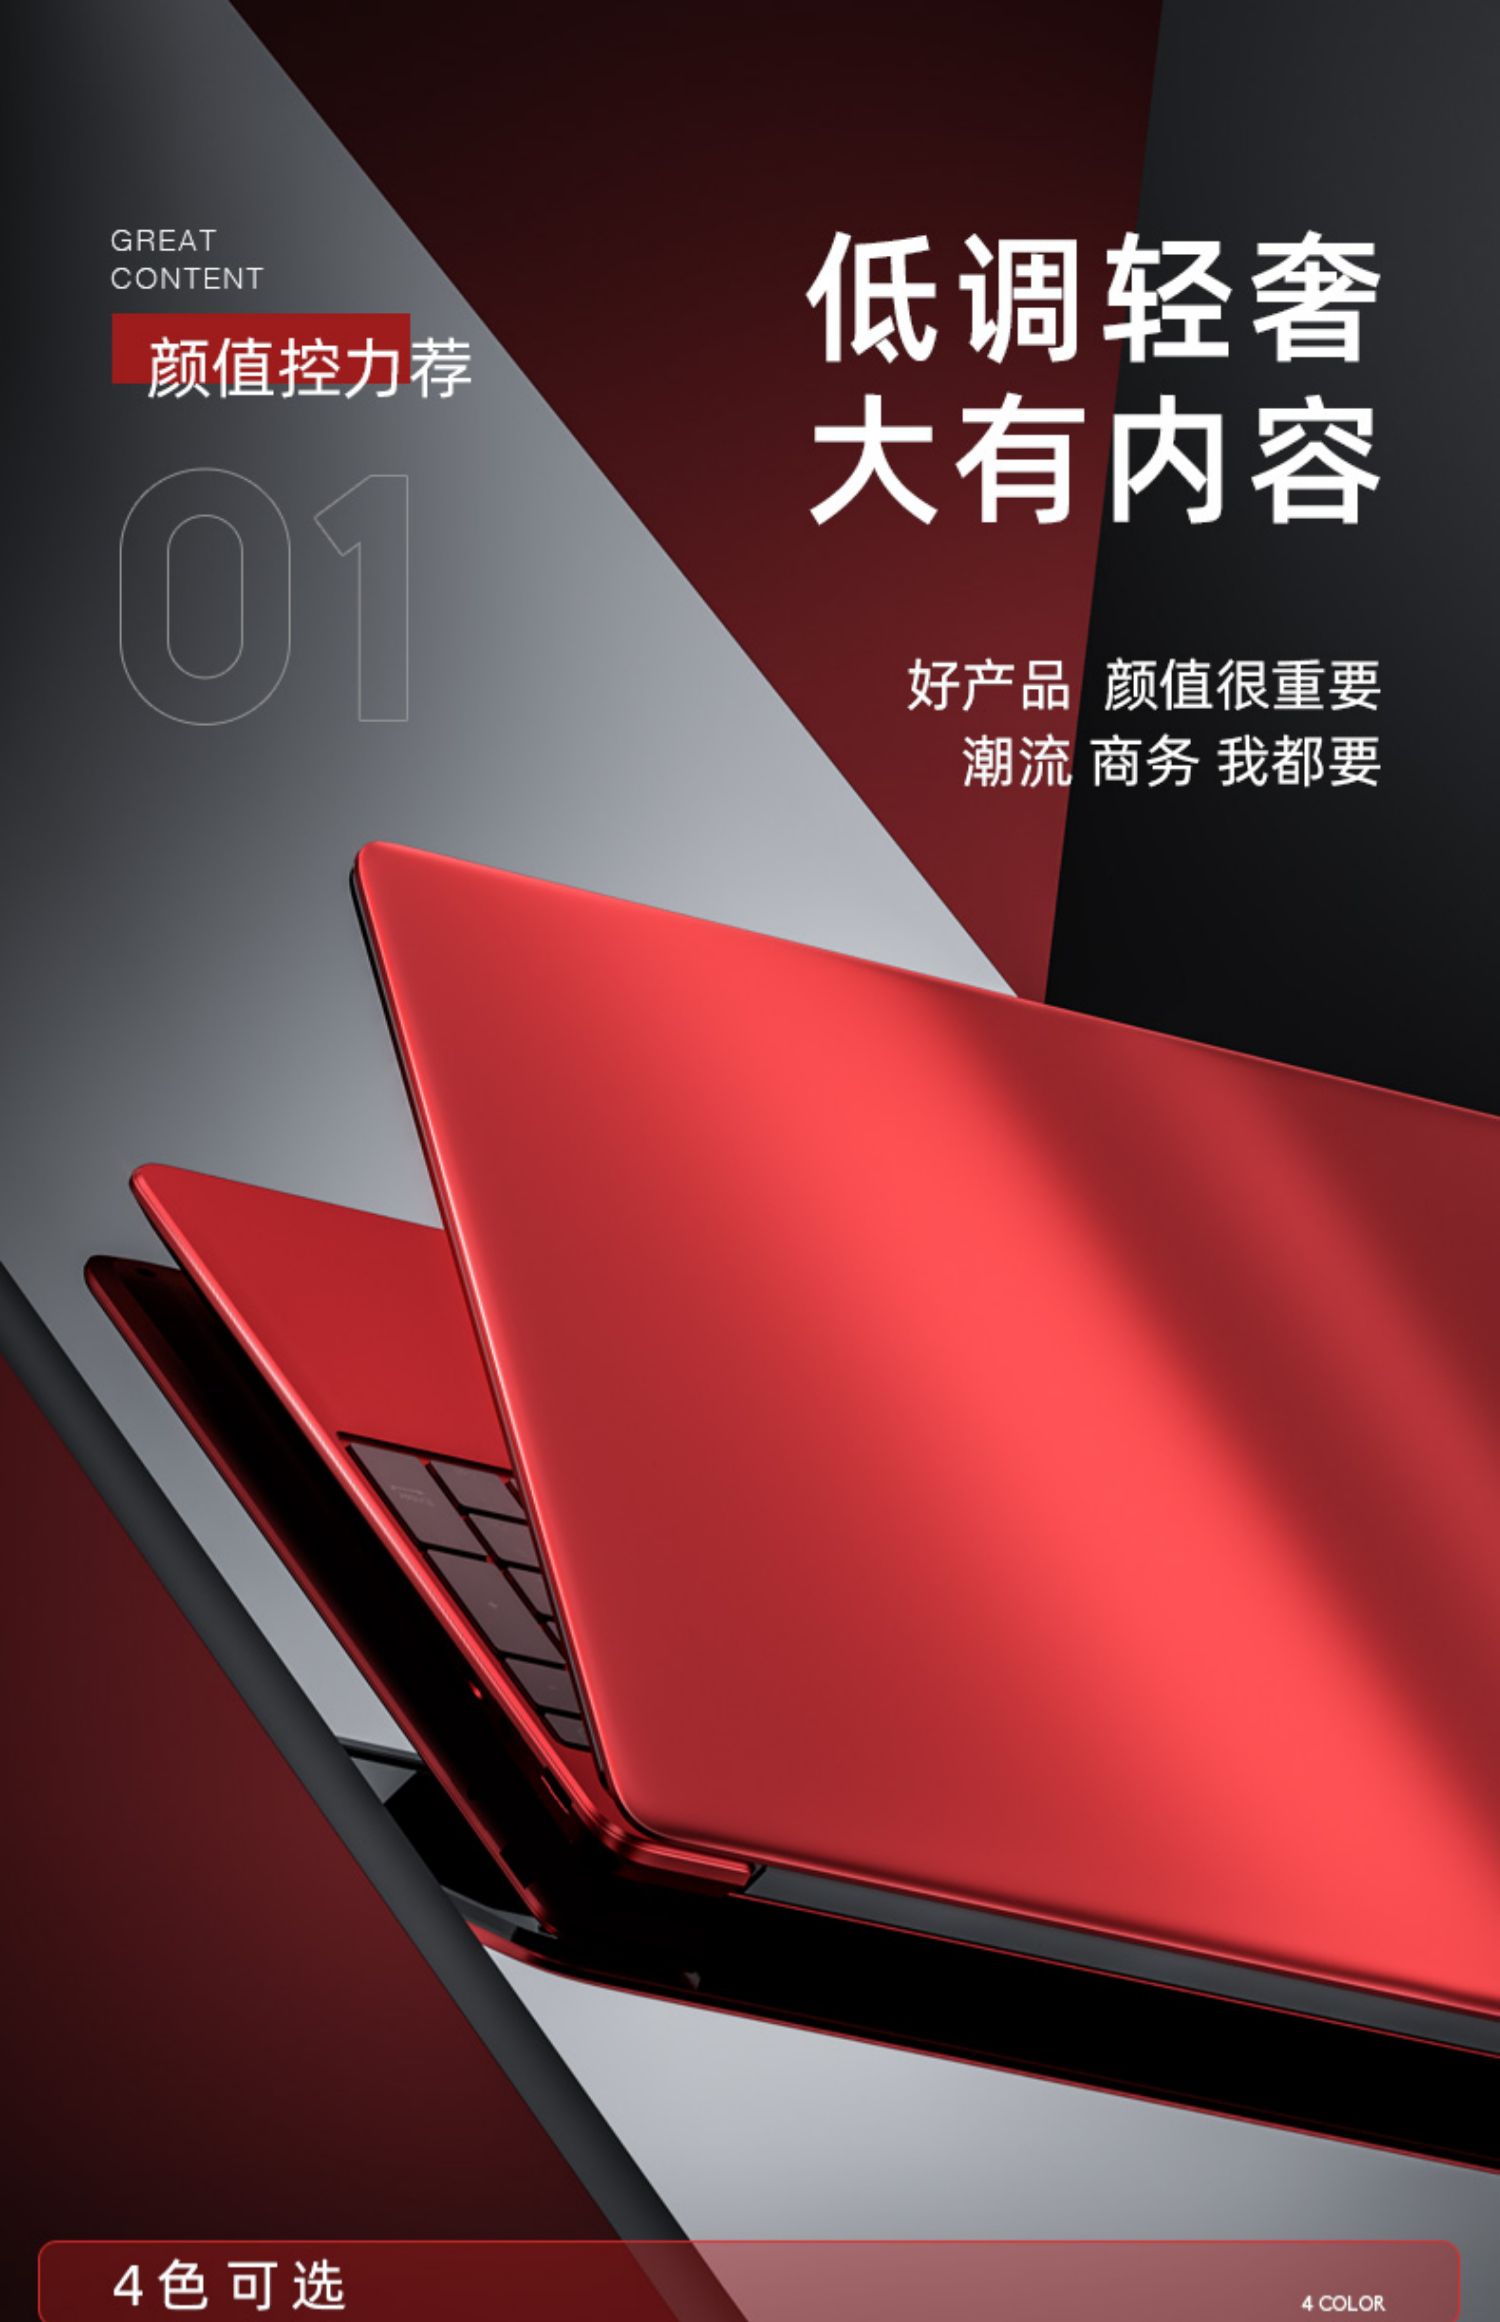 2021新品笔记本电脑戴睿r12pro全新156英寸高配轻薄便携大学生游戏本